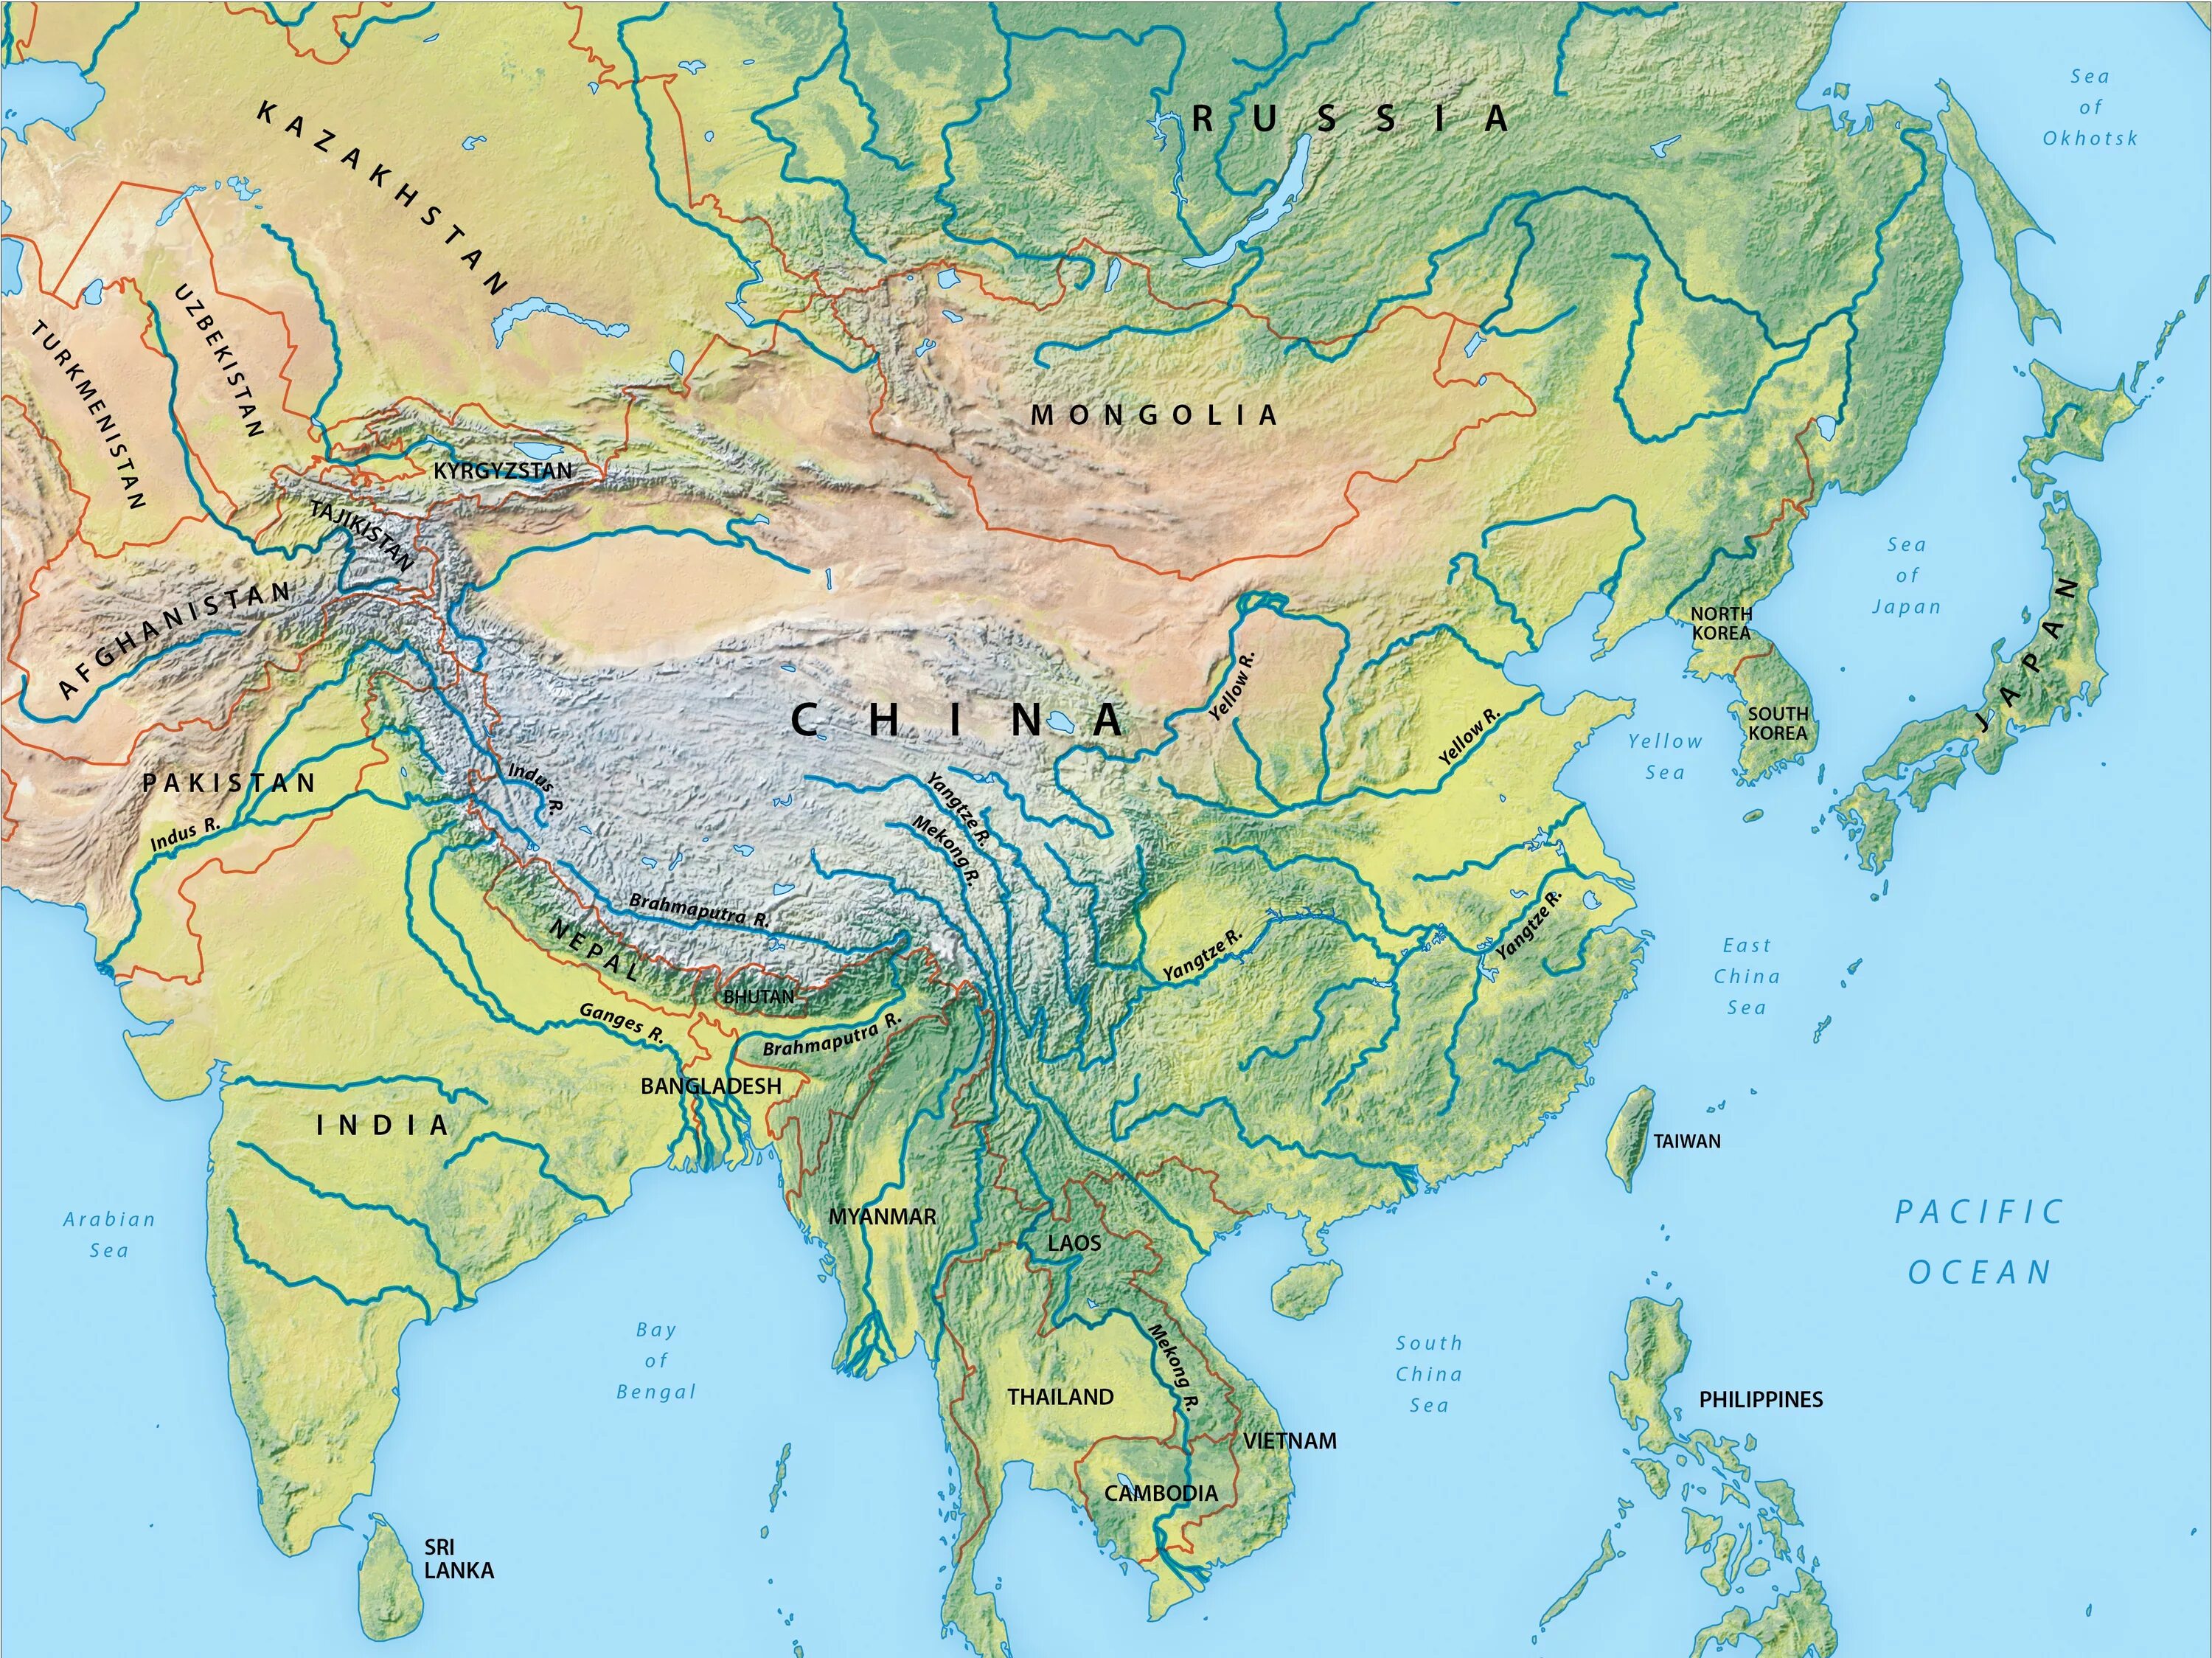 Реки Азии на карте. Крупнейшие реки Азии на карте. Зарубежная Азия реки и озера на карте. Крупные реки Азии на карте. Реки и озера азии